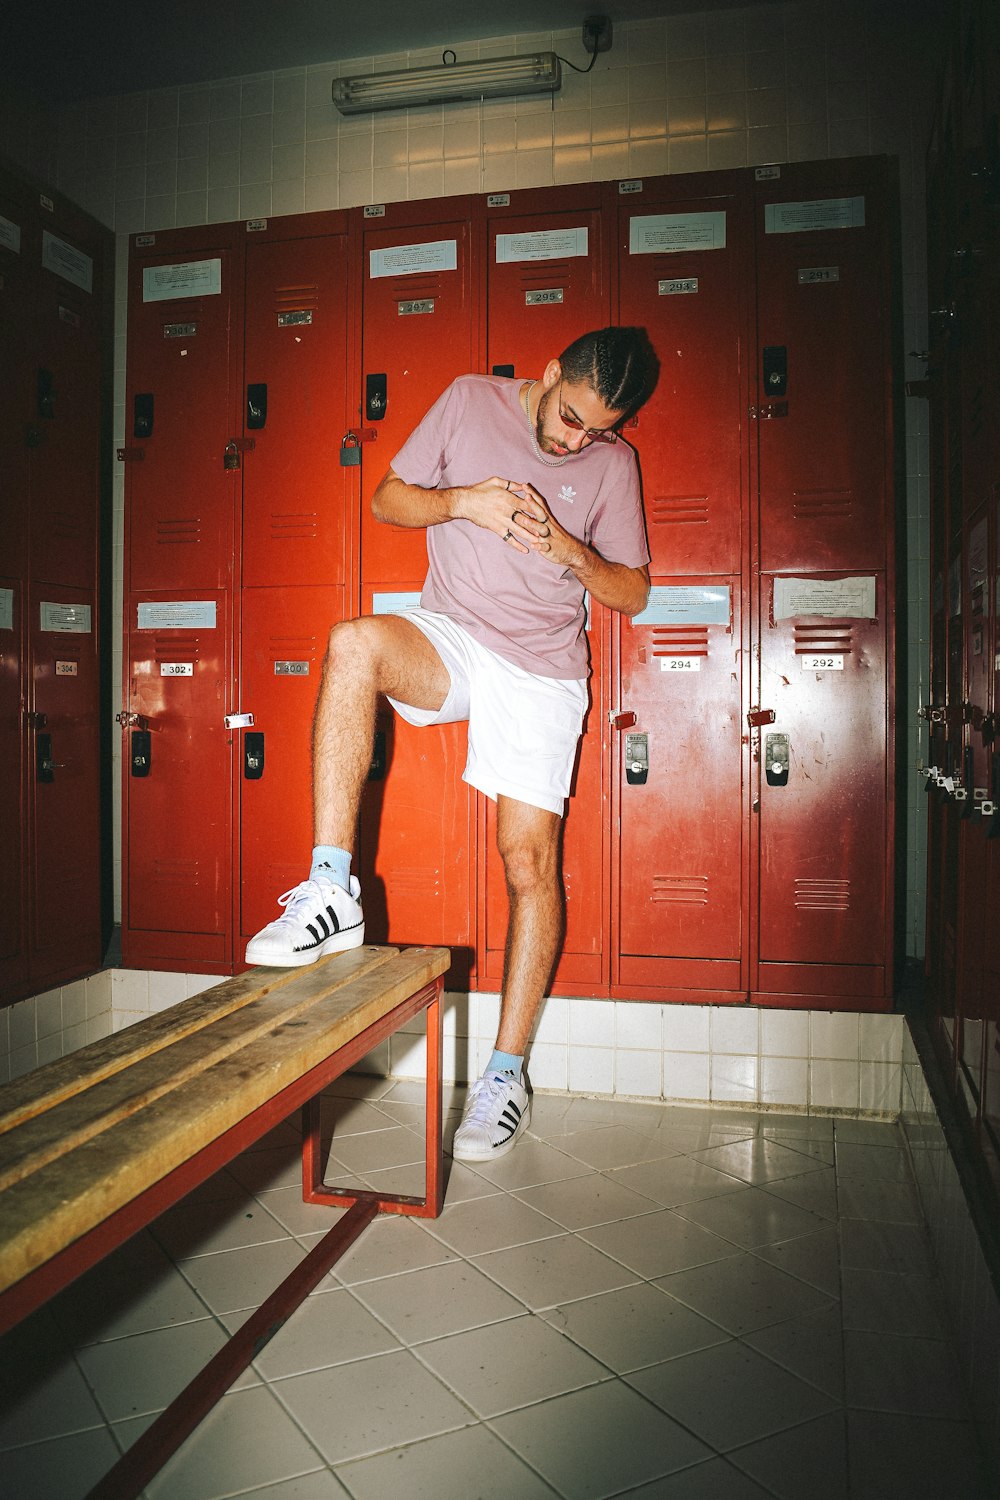 a man standing on a locker